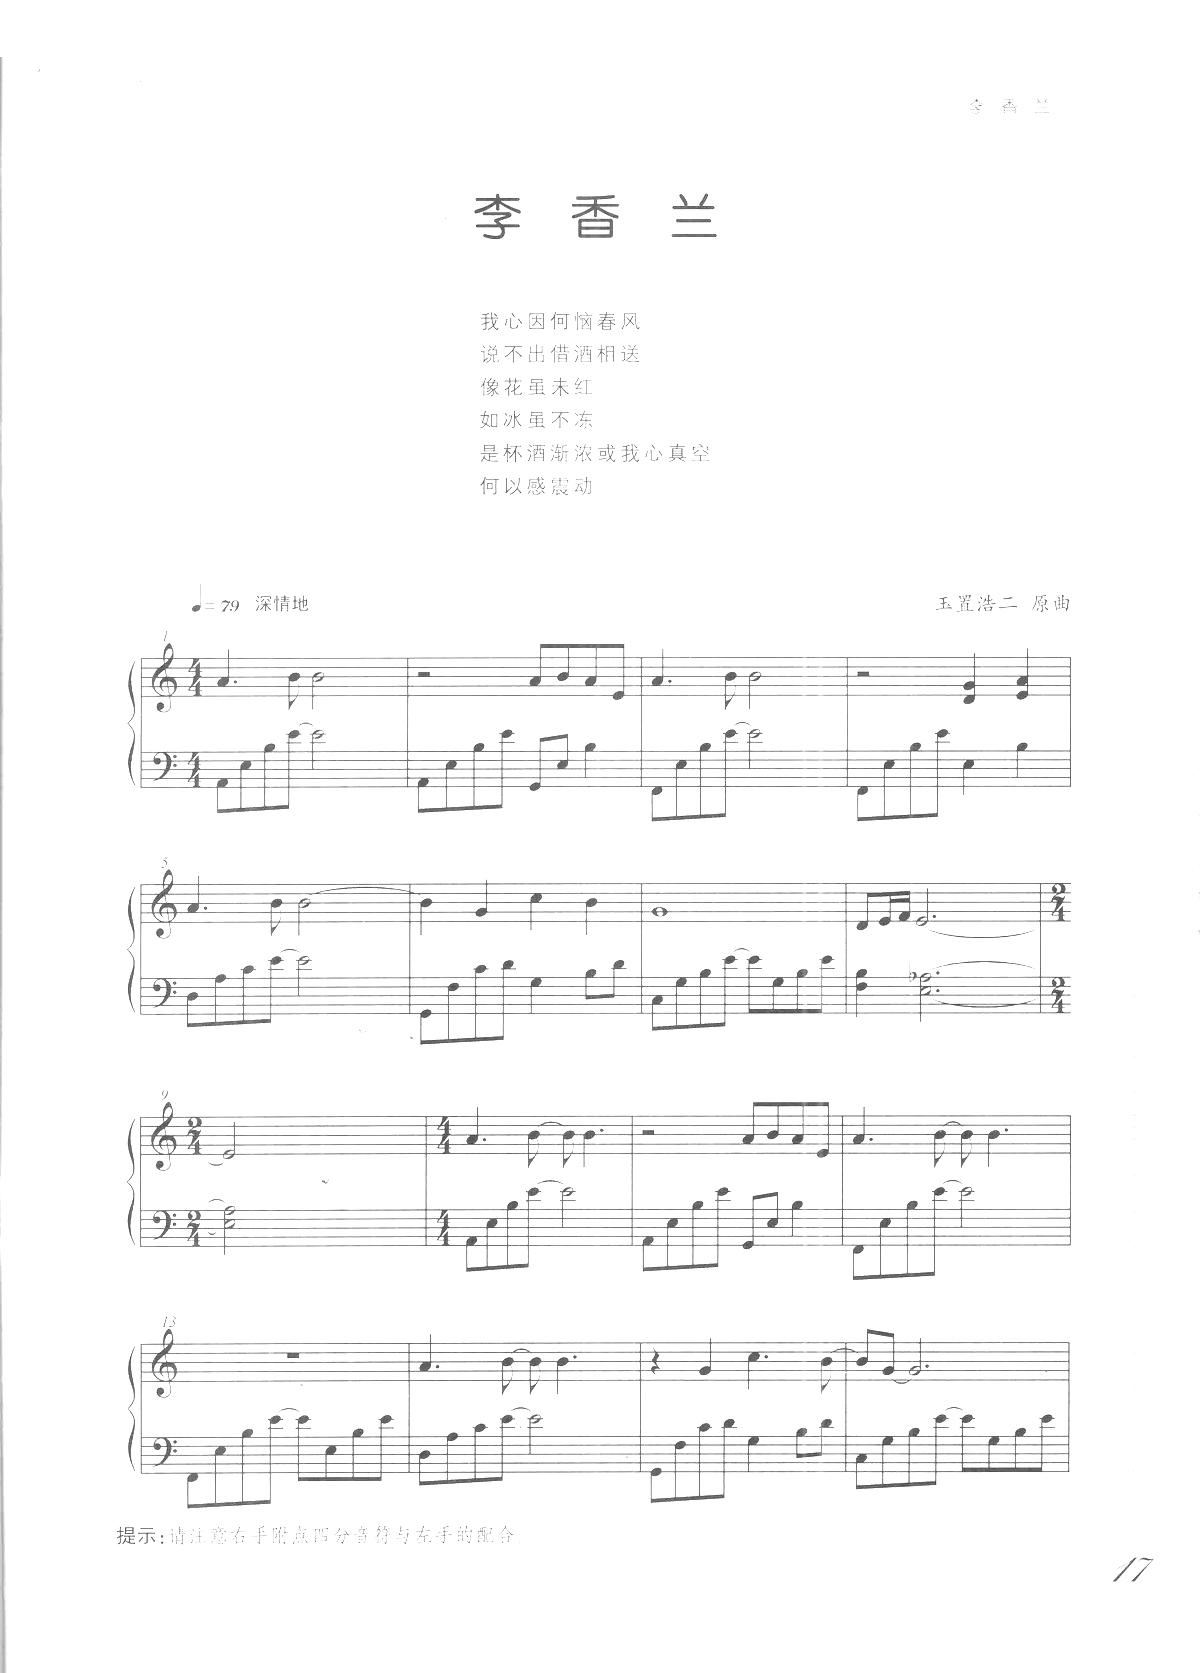 李香兰 吻别 张学友歌曲改编的钢琴曲(钢琴谱)1